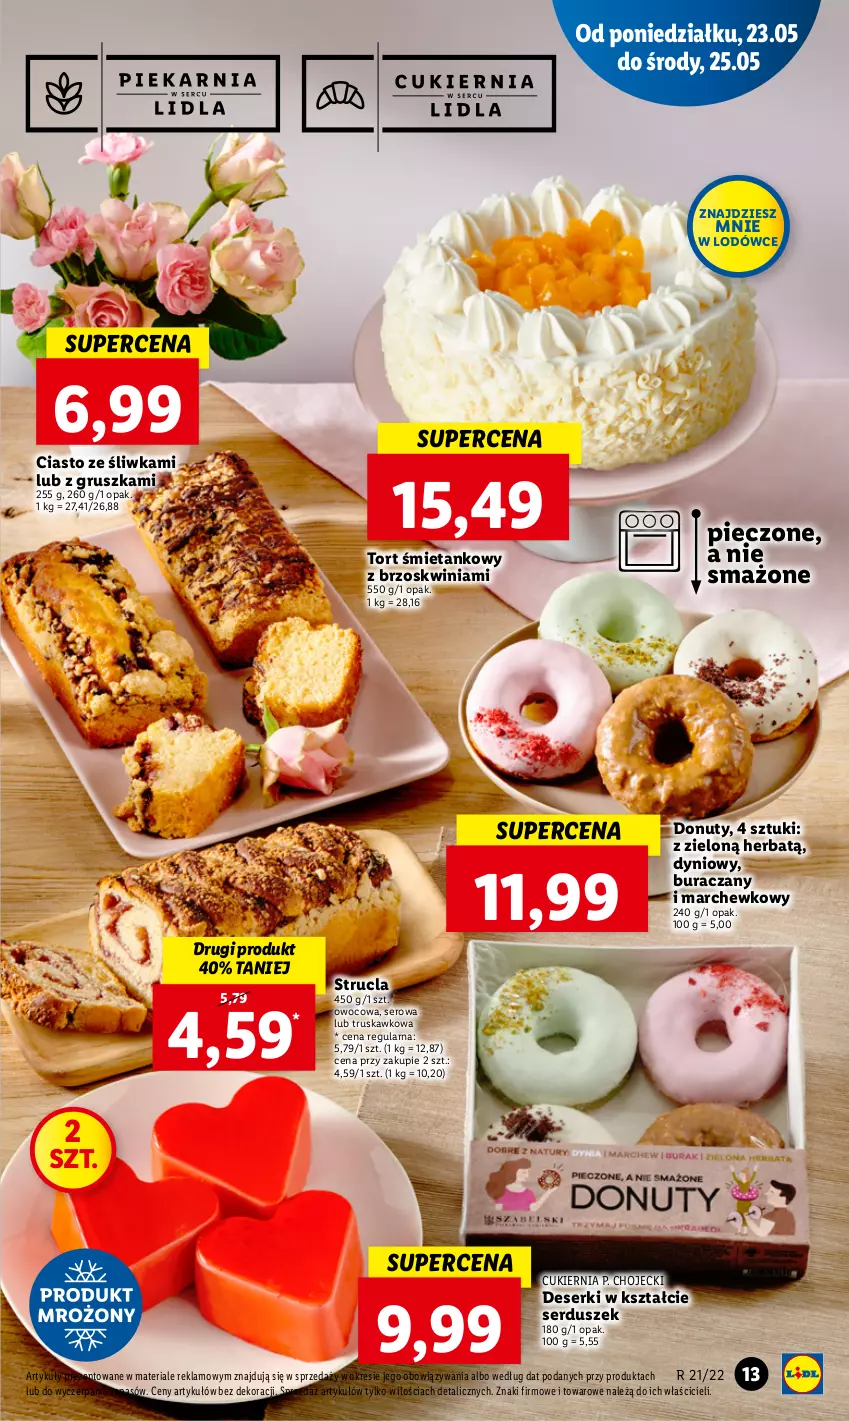 Gazetka promocyjna Lidl - GAZETKA - ważna 23.05 do 25.05.2022 - strona 13 - produkty: Cukier, Deser, Donut, Nuty, Piec, Ser, Strucla